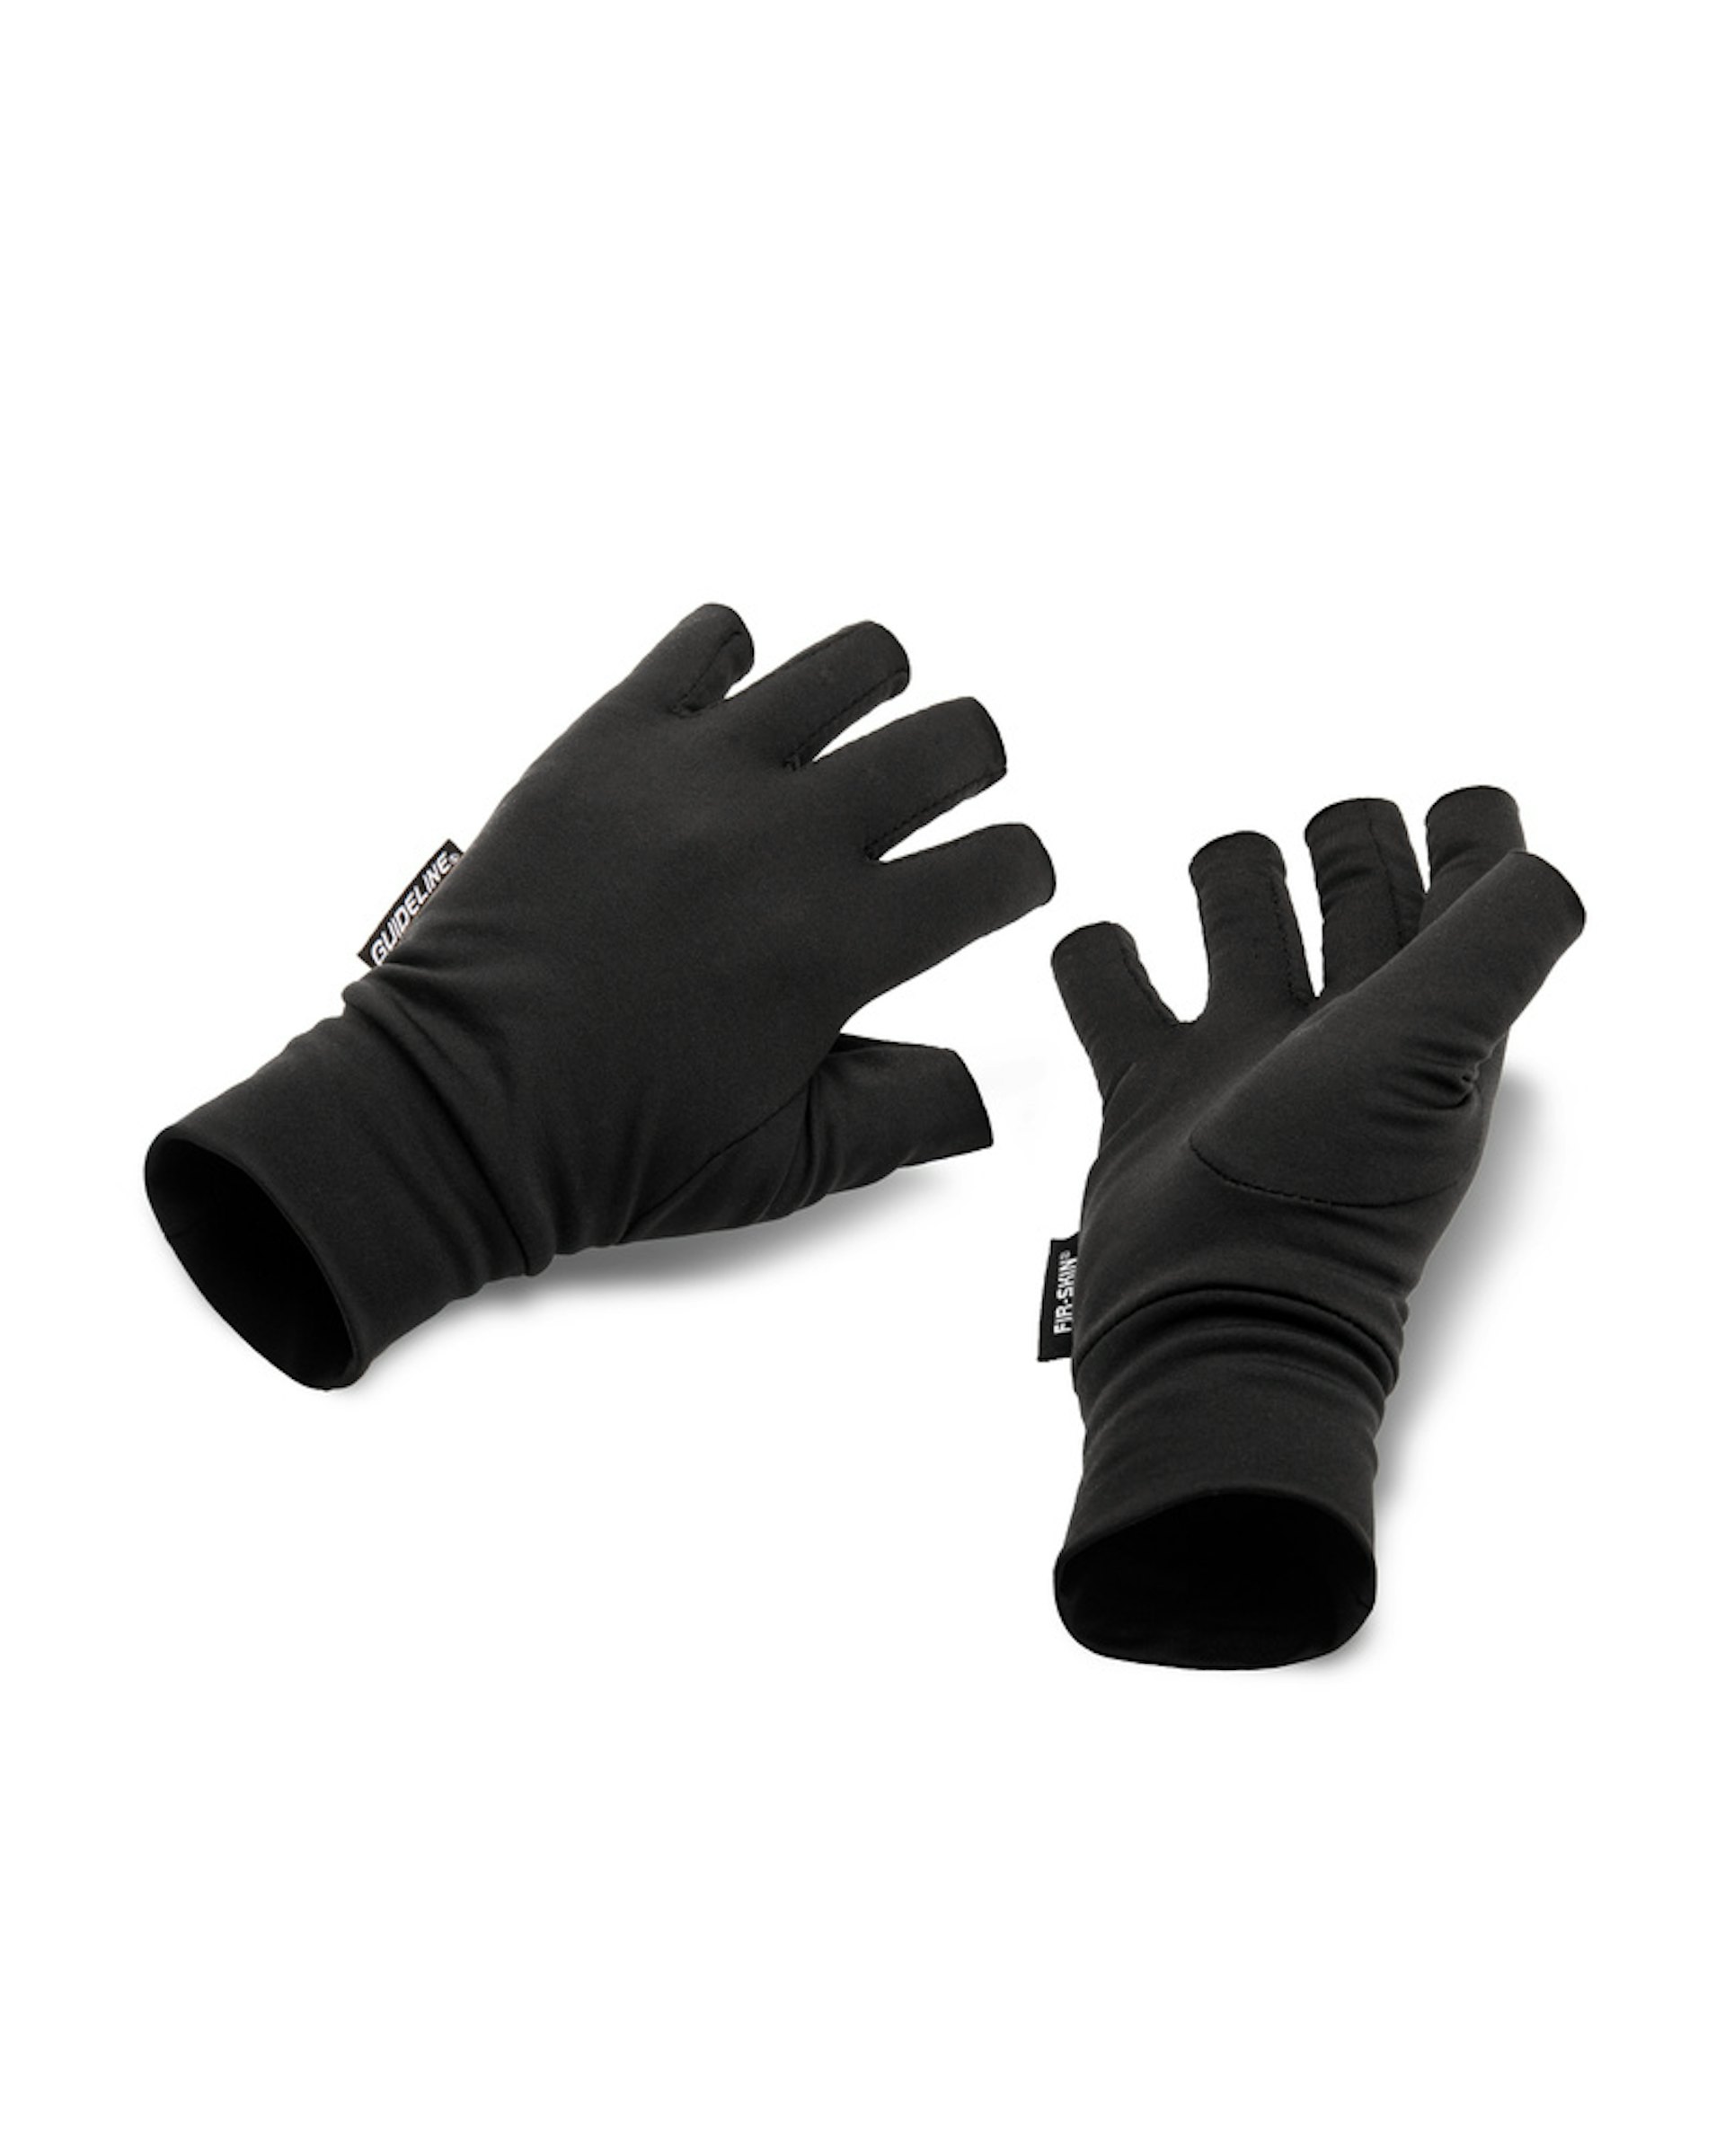 FIR-SKIN Fingerless Gloves XXL (bilde 1 av 1)